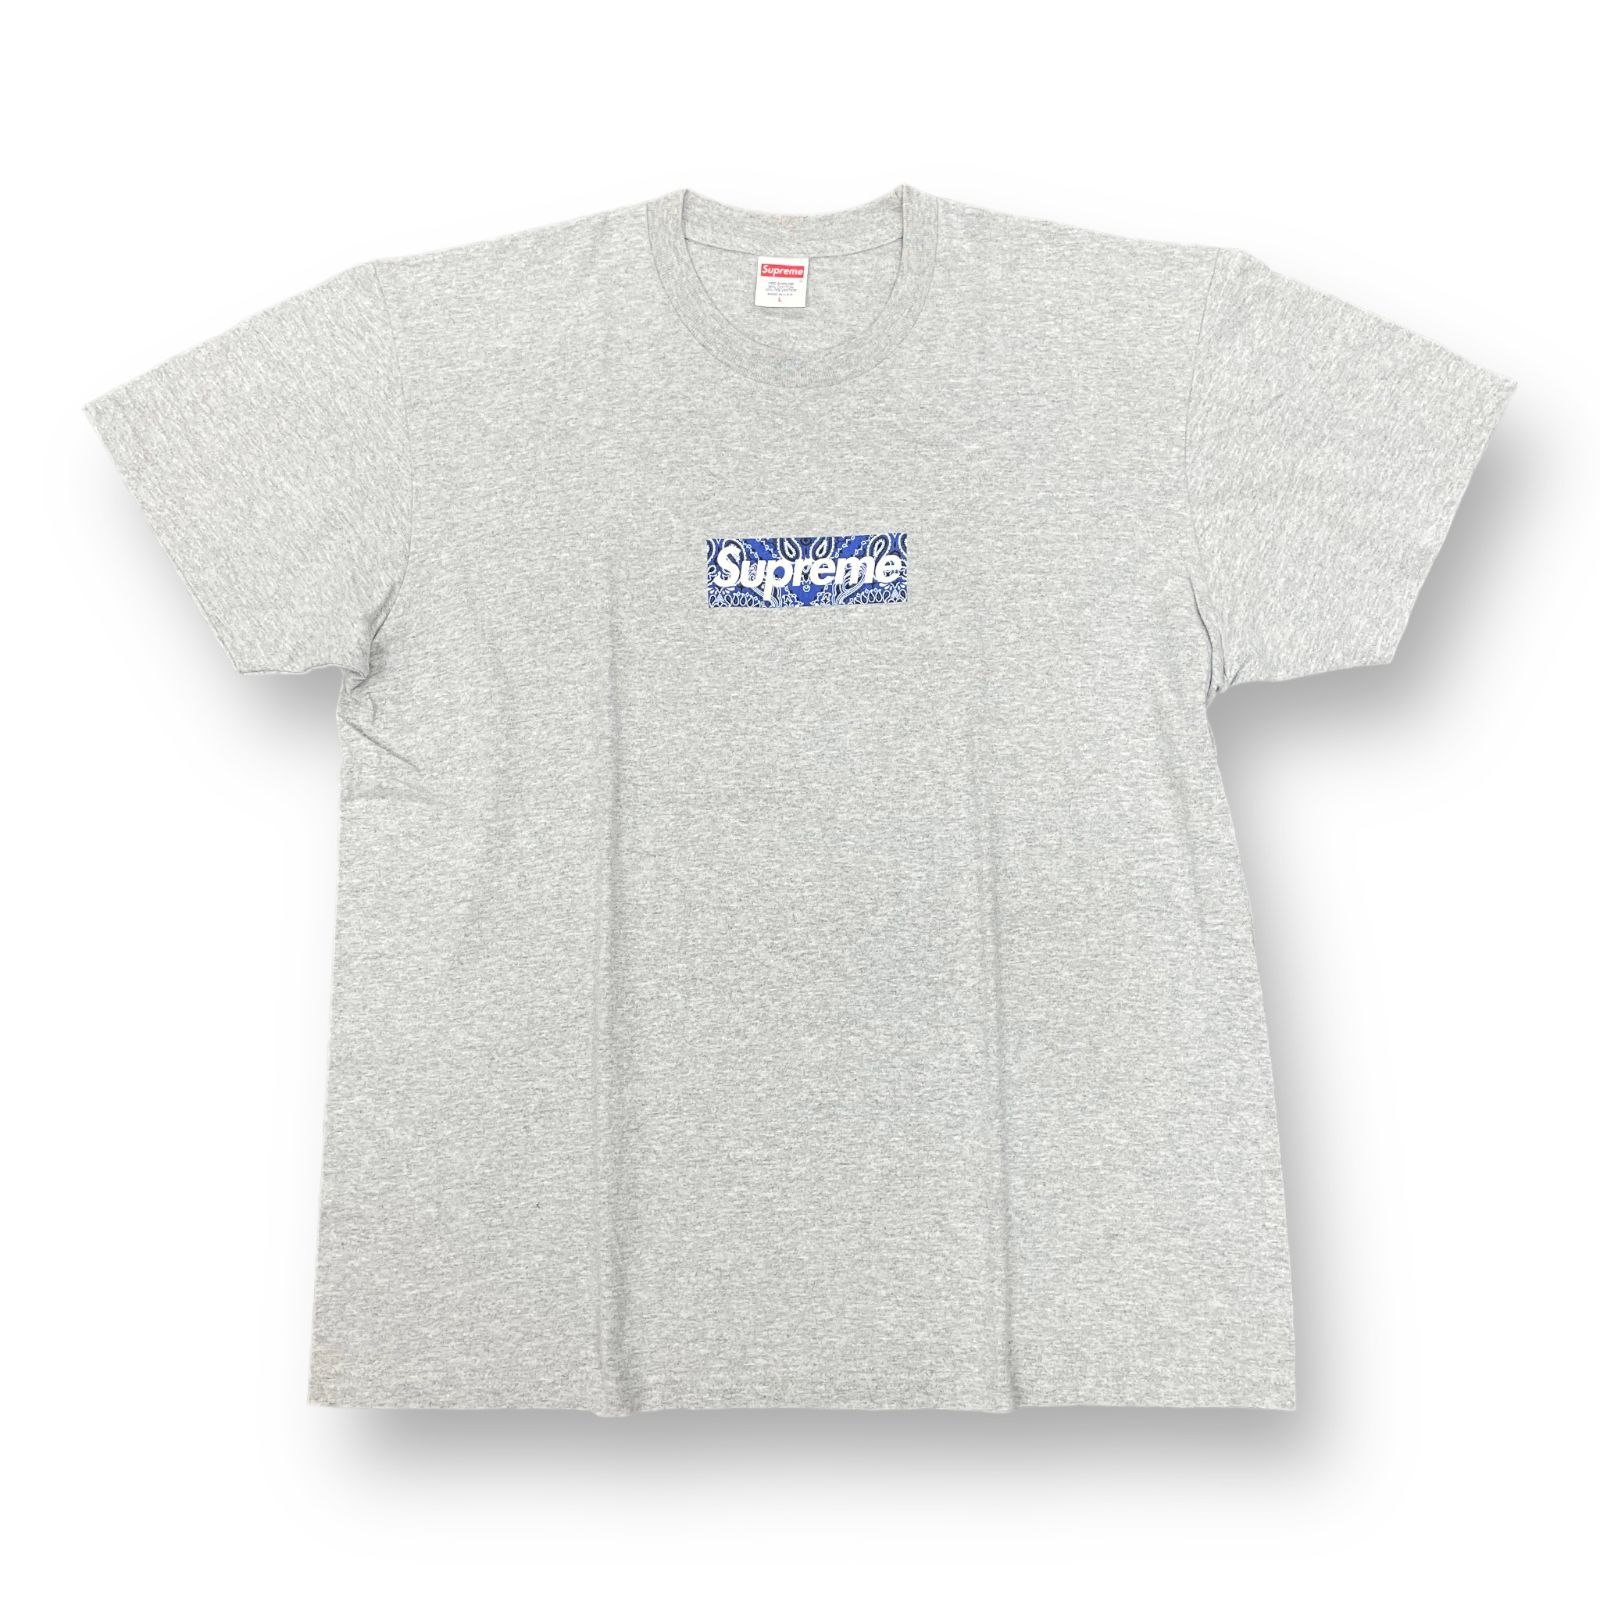 よろしくお願いいたしますSupreme 2019A/W Bandana BoxロゴTシャツ L 紺 新品